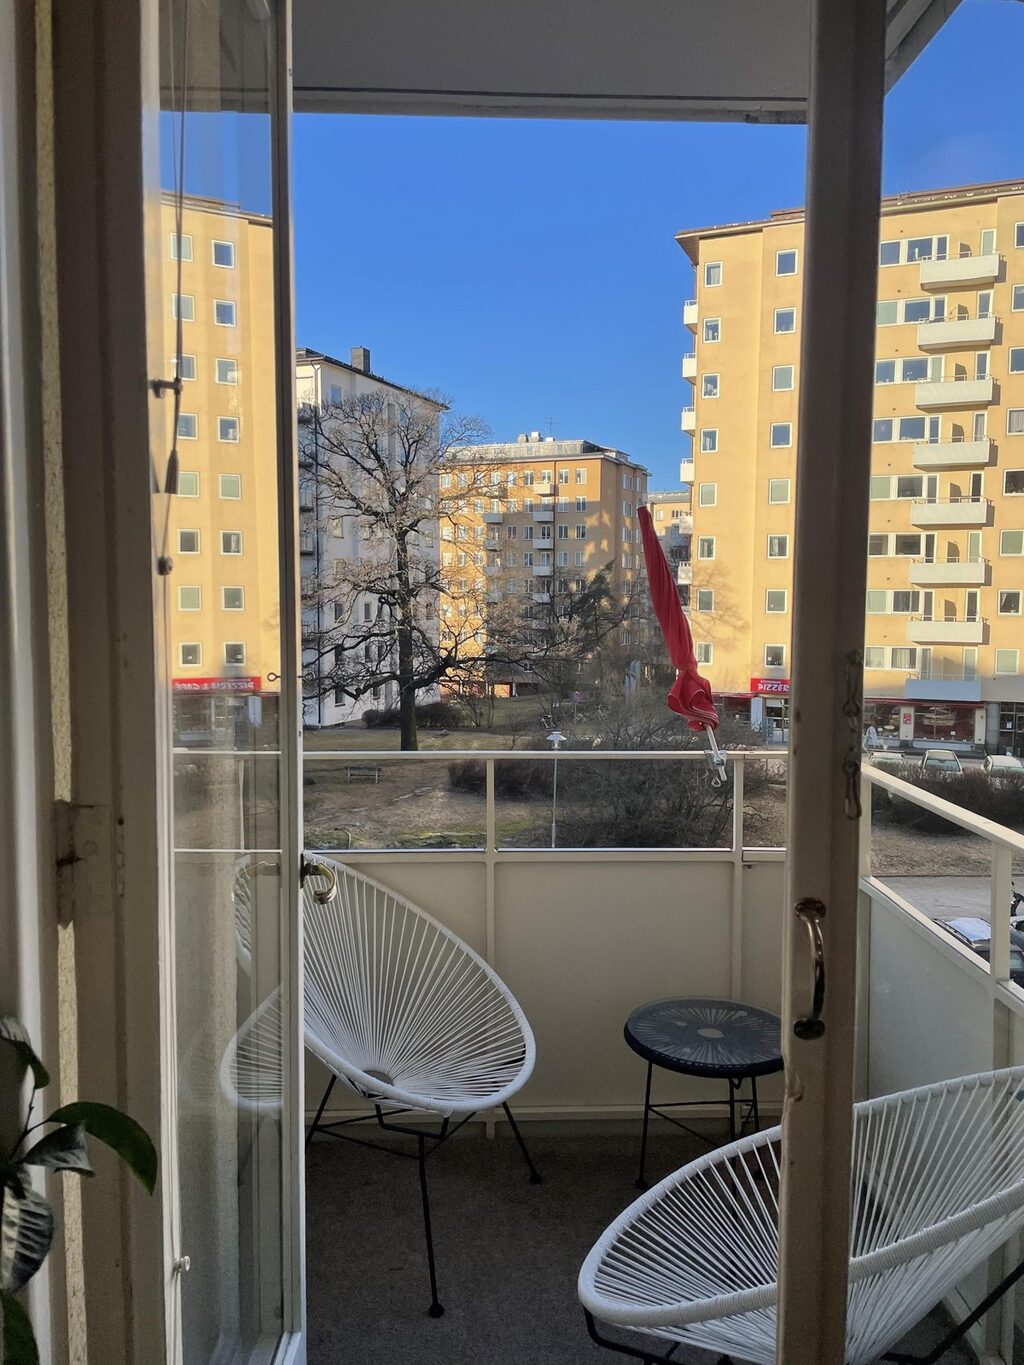 Lägenhetsbyte - Rindögatan 52, 115 58 Stockholm